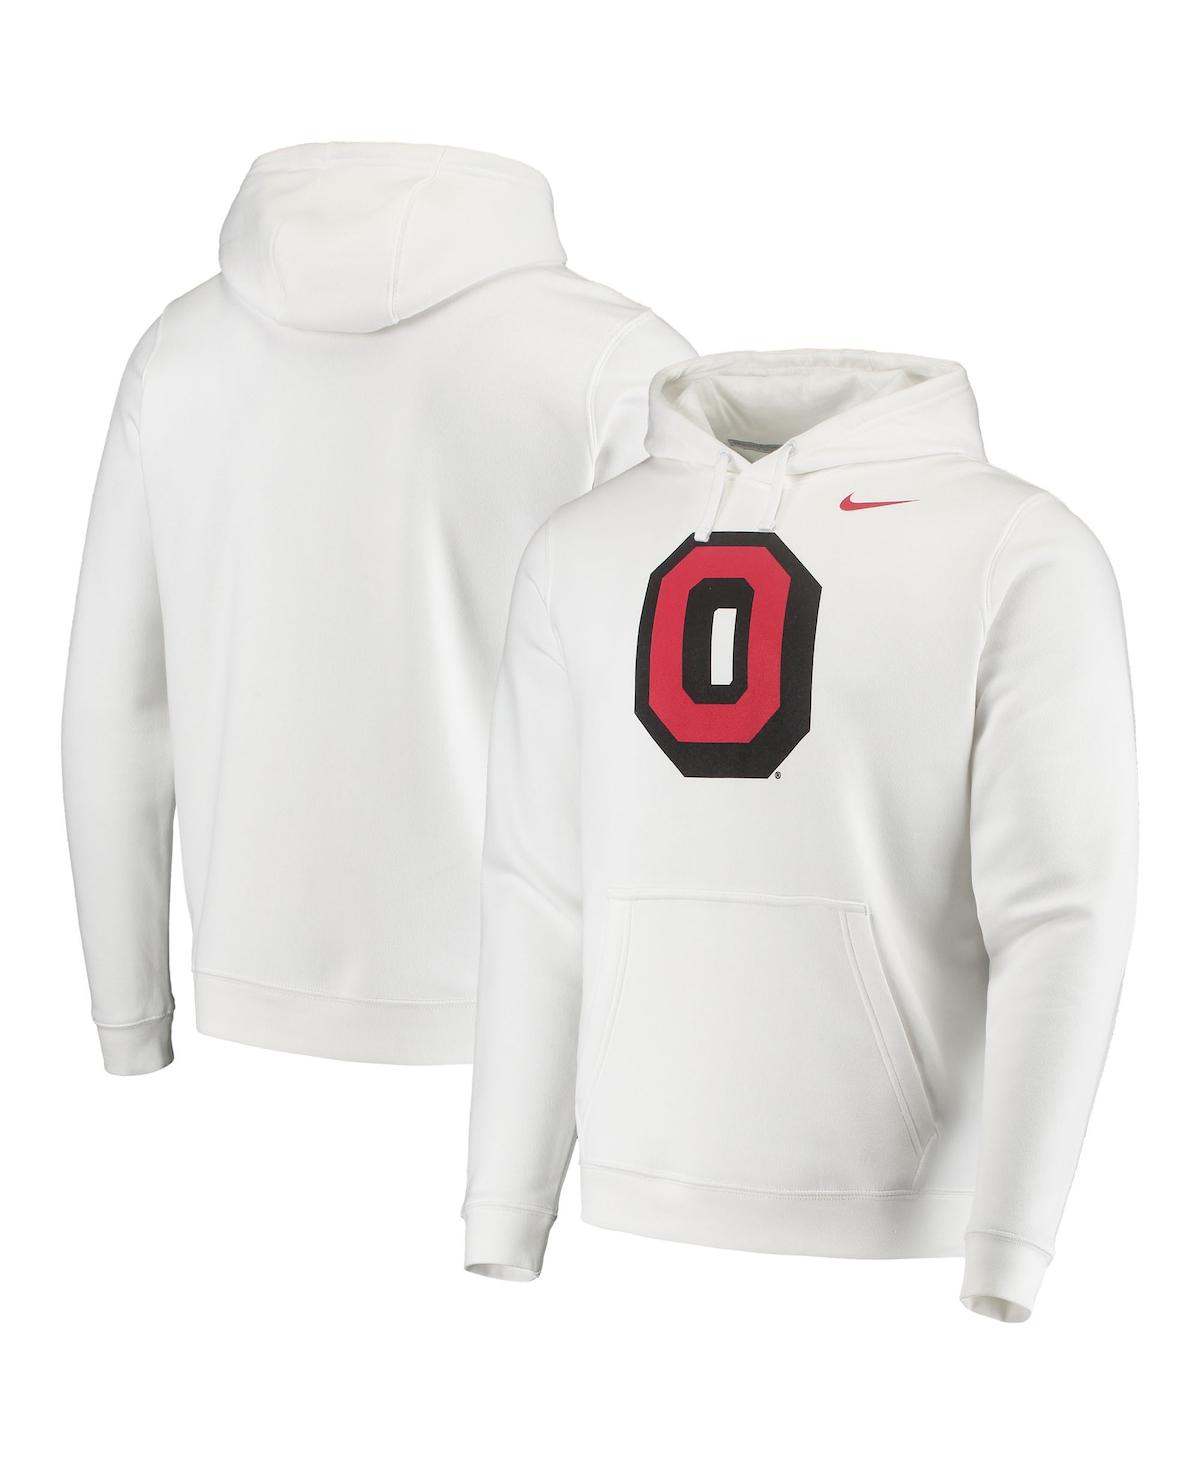 Nike Men's White Ohio State Buckeyes Vintage-like School Logo Pullover Hoodie